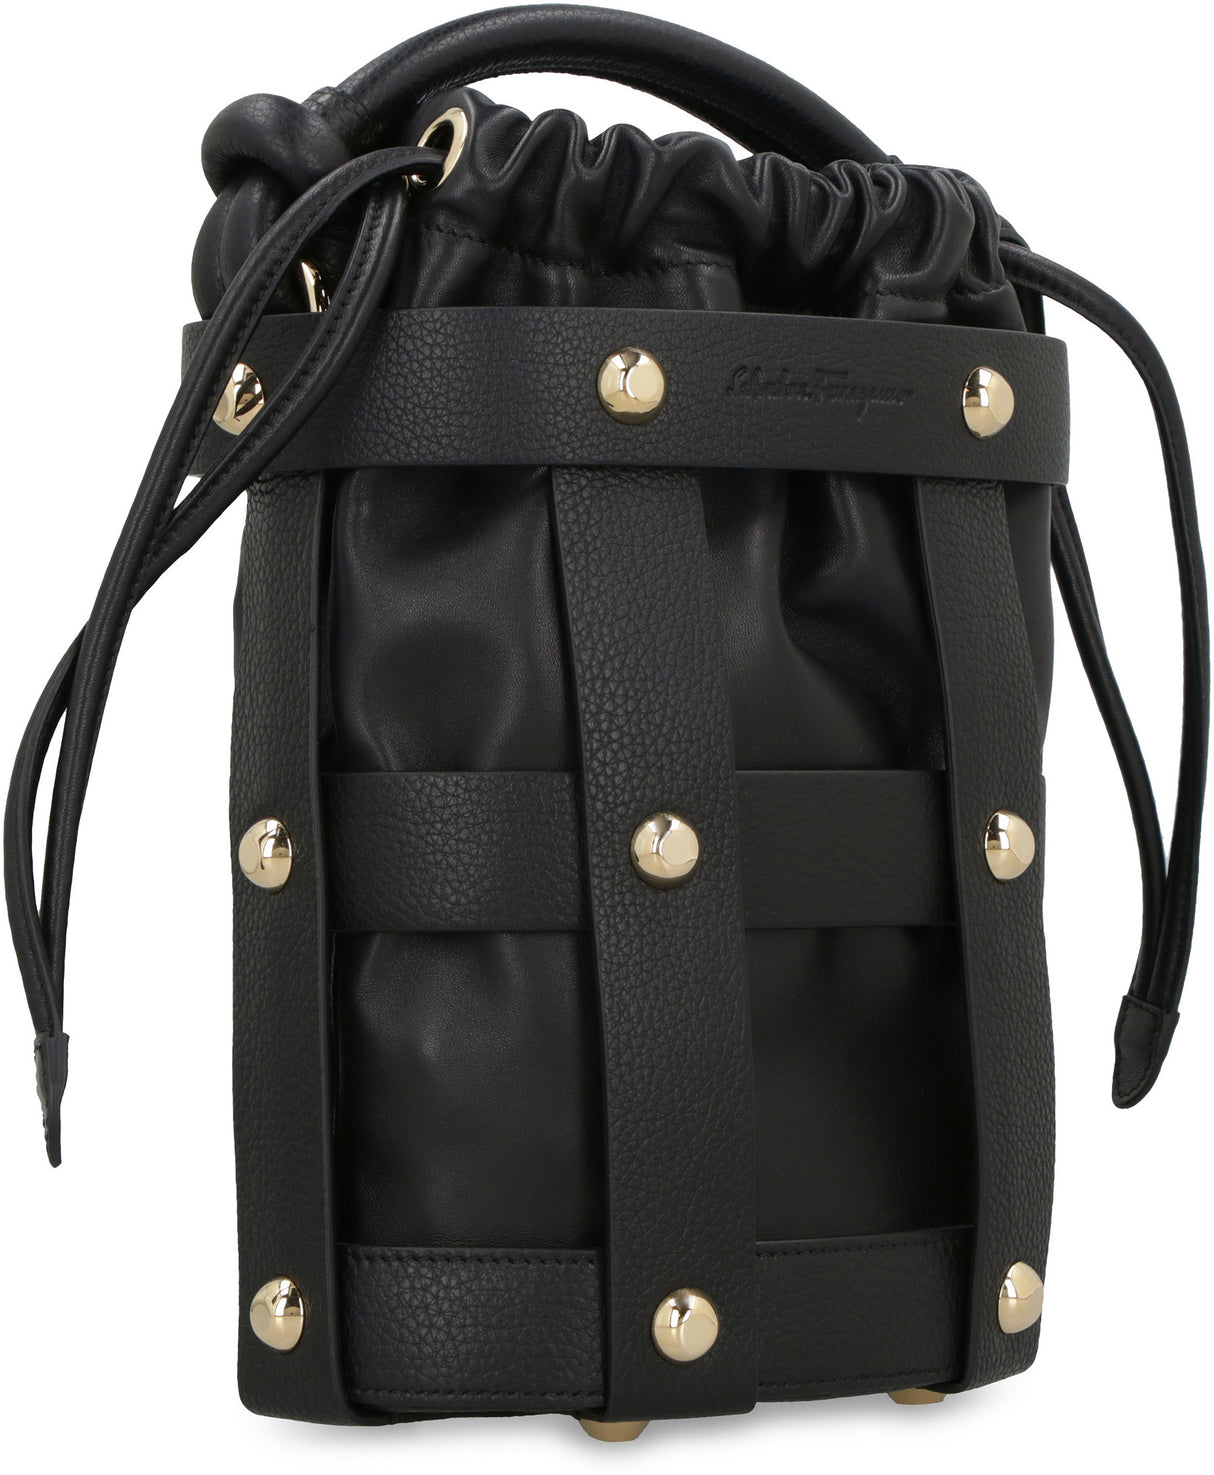 Túi xách nữ da đen với khóa vặn chất liệu vàng phần cứng